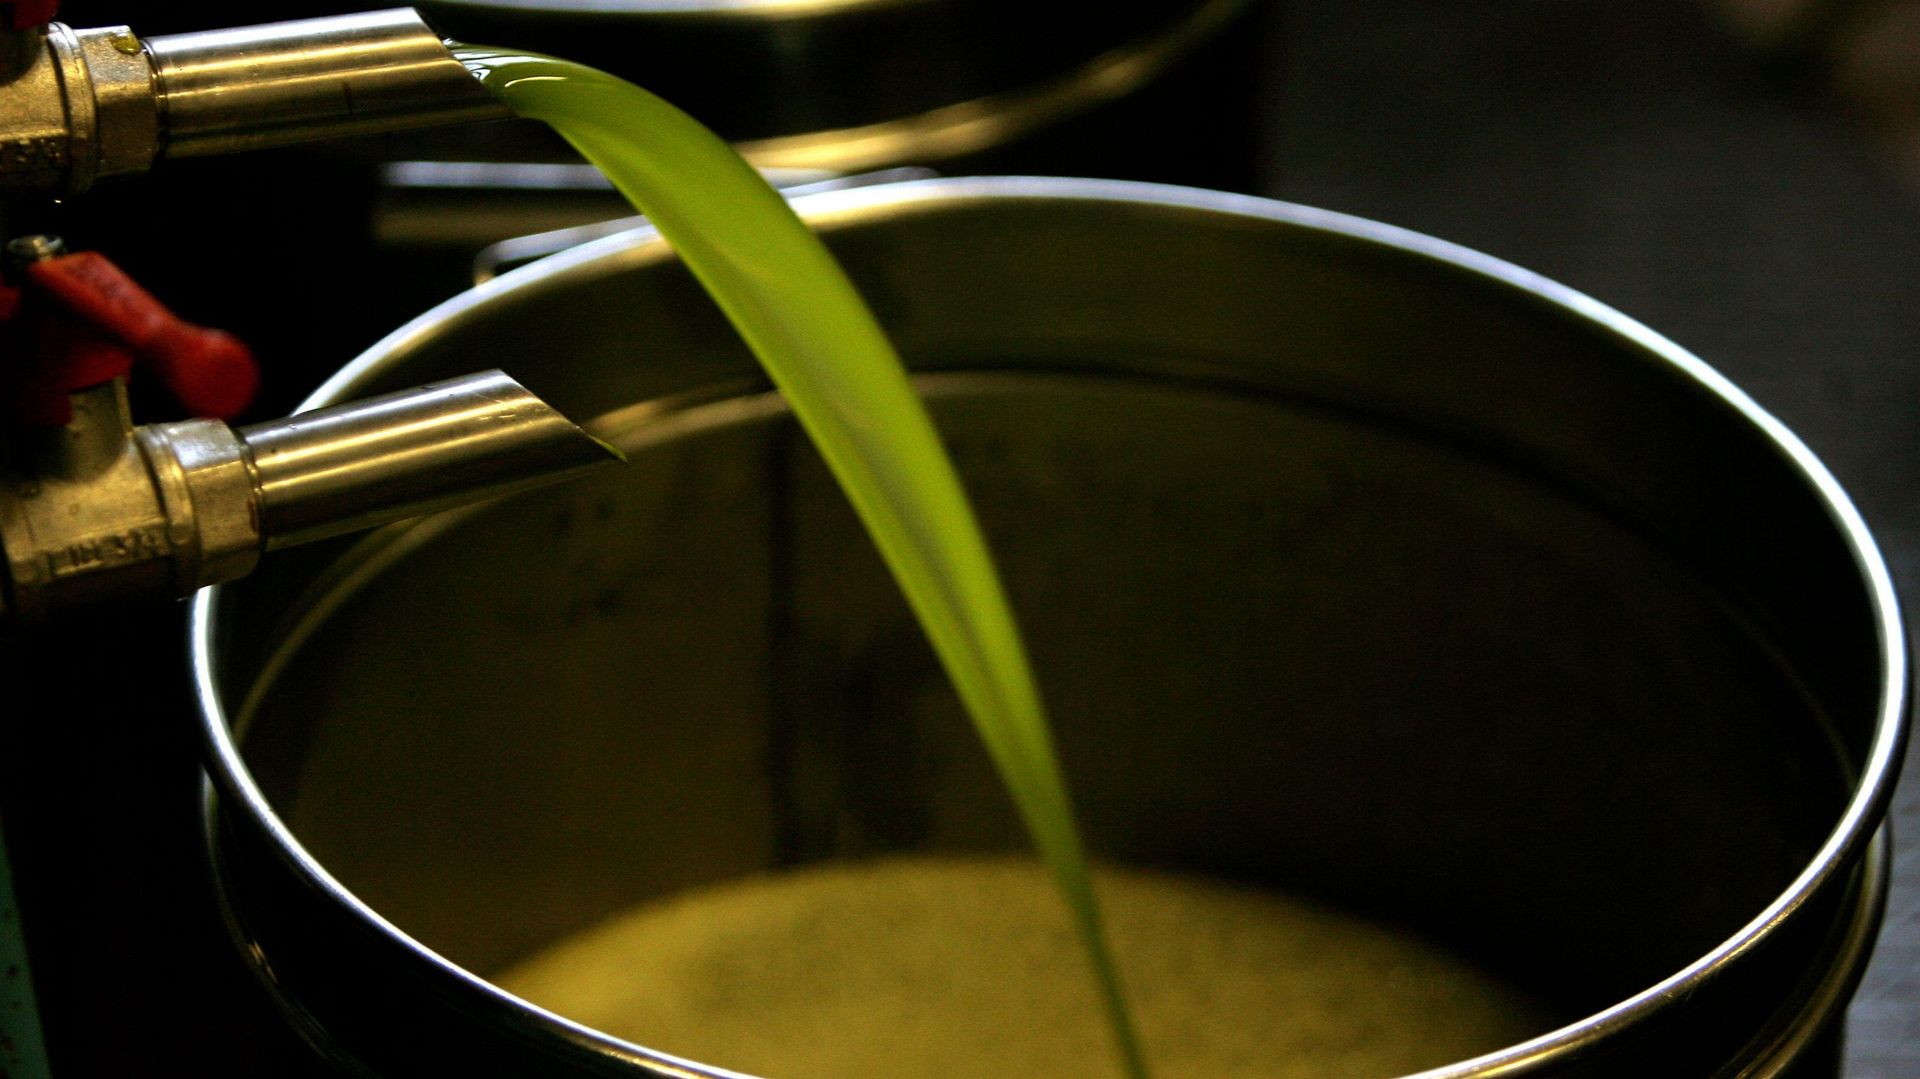 Reportage : Sur les traces de la meilleure huile d’olive marocaine  [INTÉGRAL]